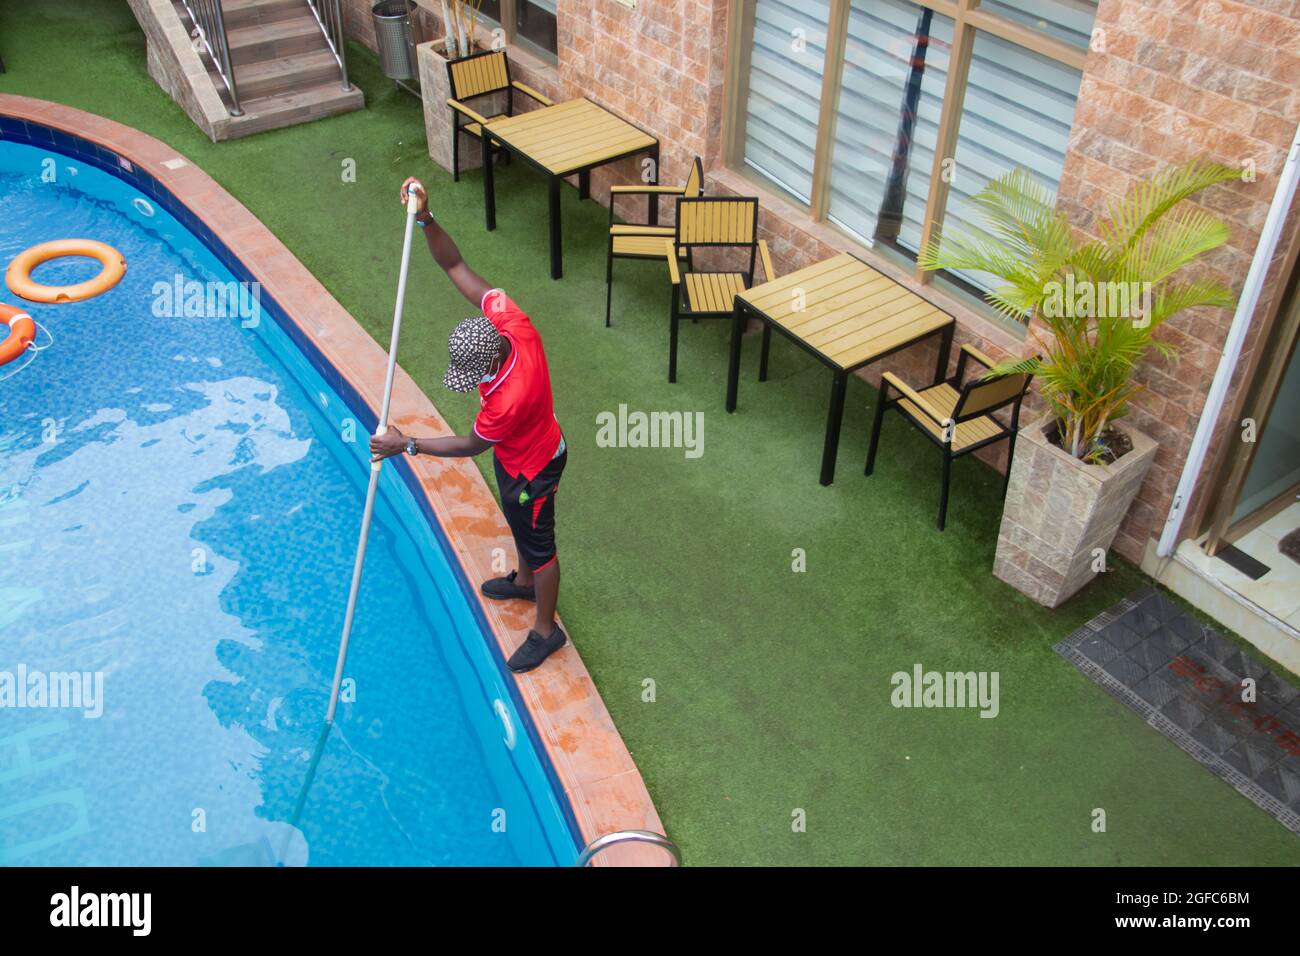 Reinigung des Schwimmbads durch den Pool-Typen, mit Netz. Dekorative Pflanzen neben dem Swimmingpool Stockfoto